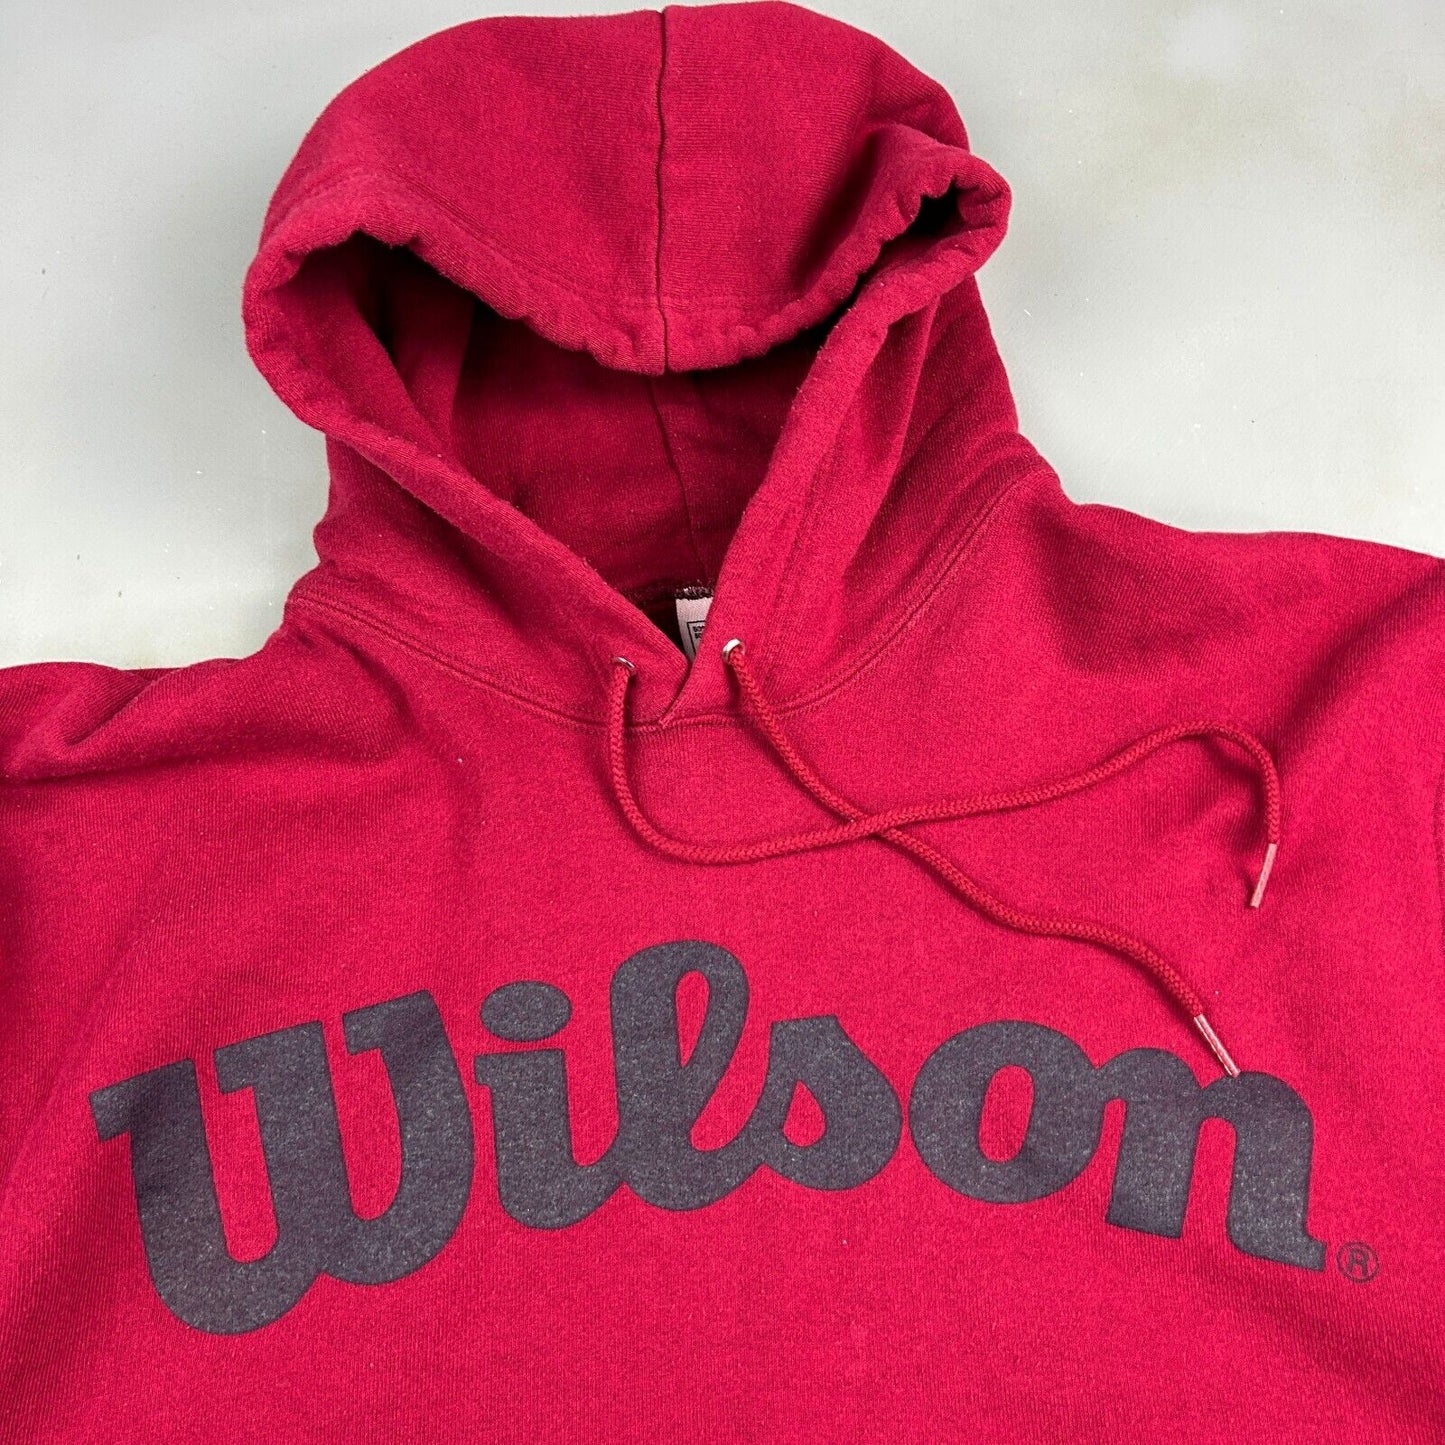 VINTAGE 90s WILSON Big Logo Red Hoodie Sweater sz Large Mens